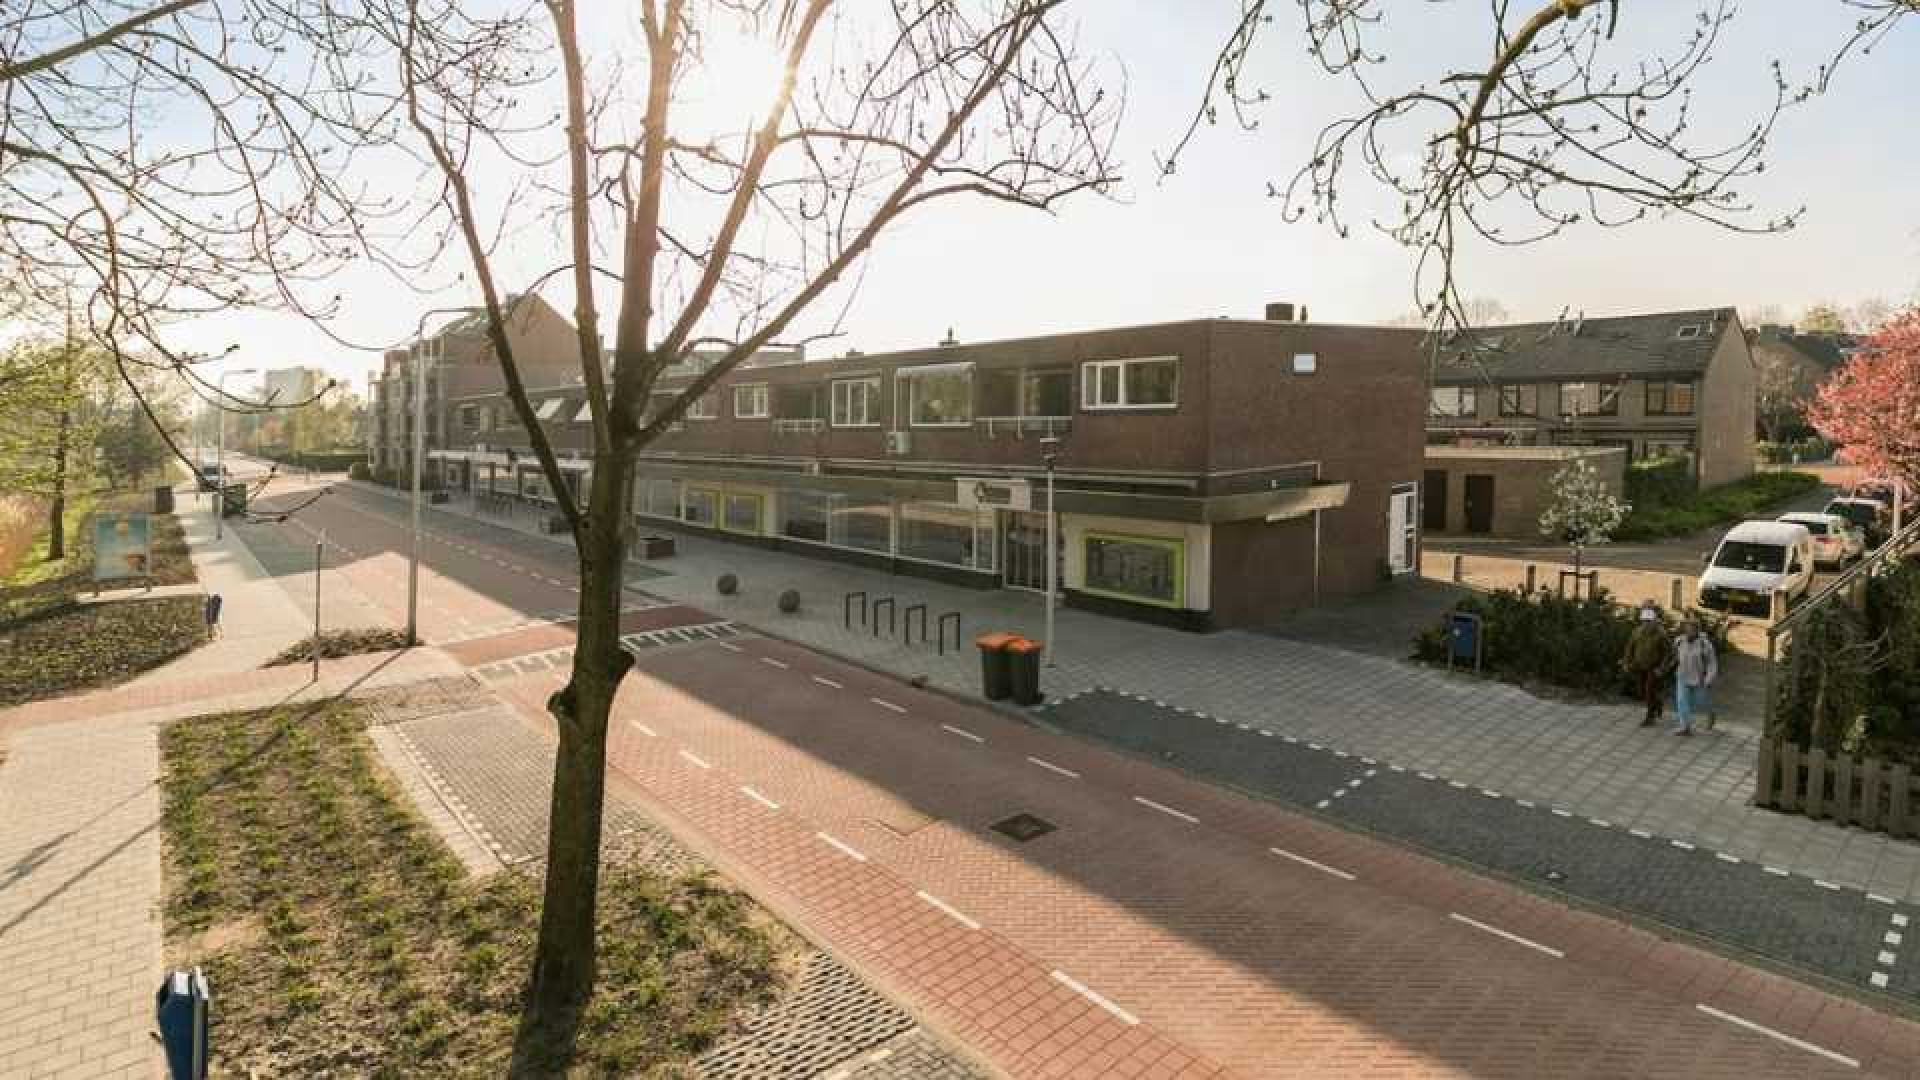 Voetballer Stefan de Vrij koopt luxe appartement in Krimpen aan den IJssel. Zie foto's 16